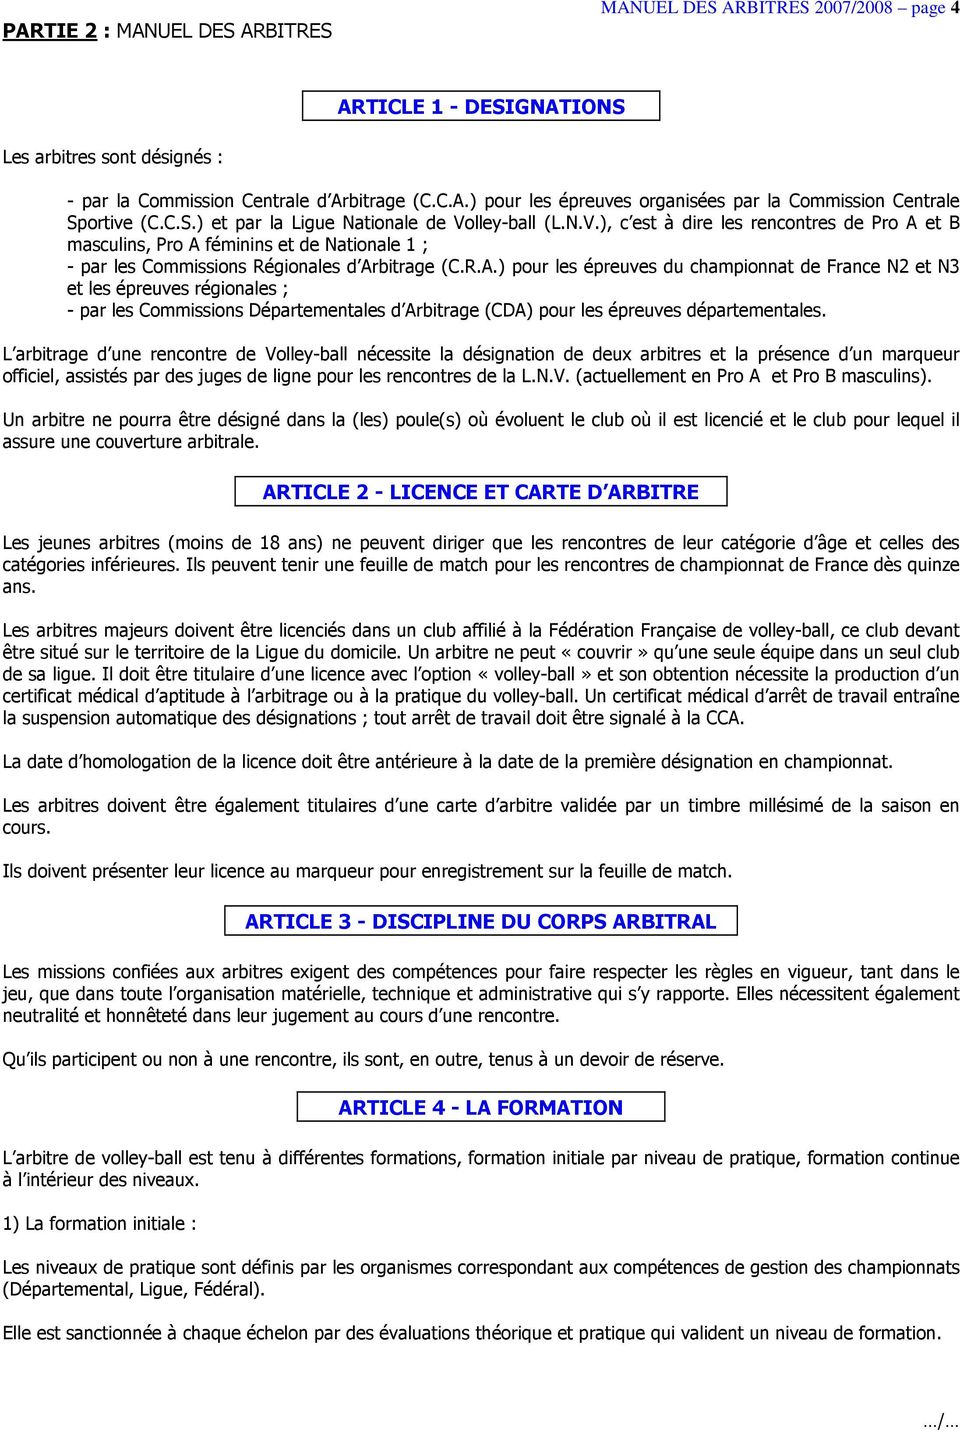 et B masculins, Pro A féminins et de Nationale 1 ; - par les Commissions Régionales d Arbitrage (C.R.A.) pour les épreuves du championnat de France N2 et N3 et les épreuves régionales ; - par les Commissions Départementales d Arbitrage (CDA) pour les épreuves départementales.